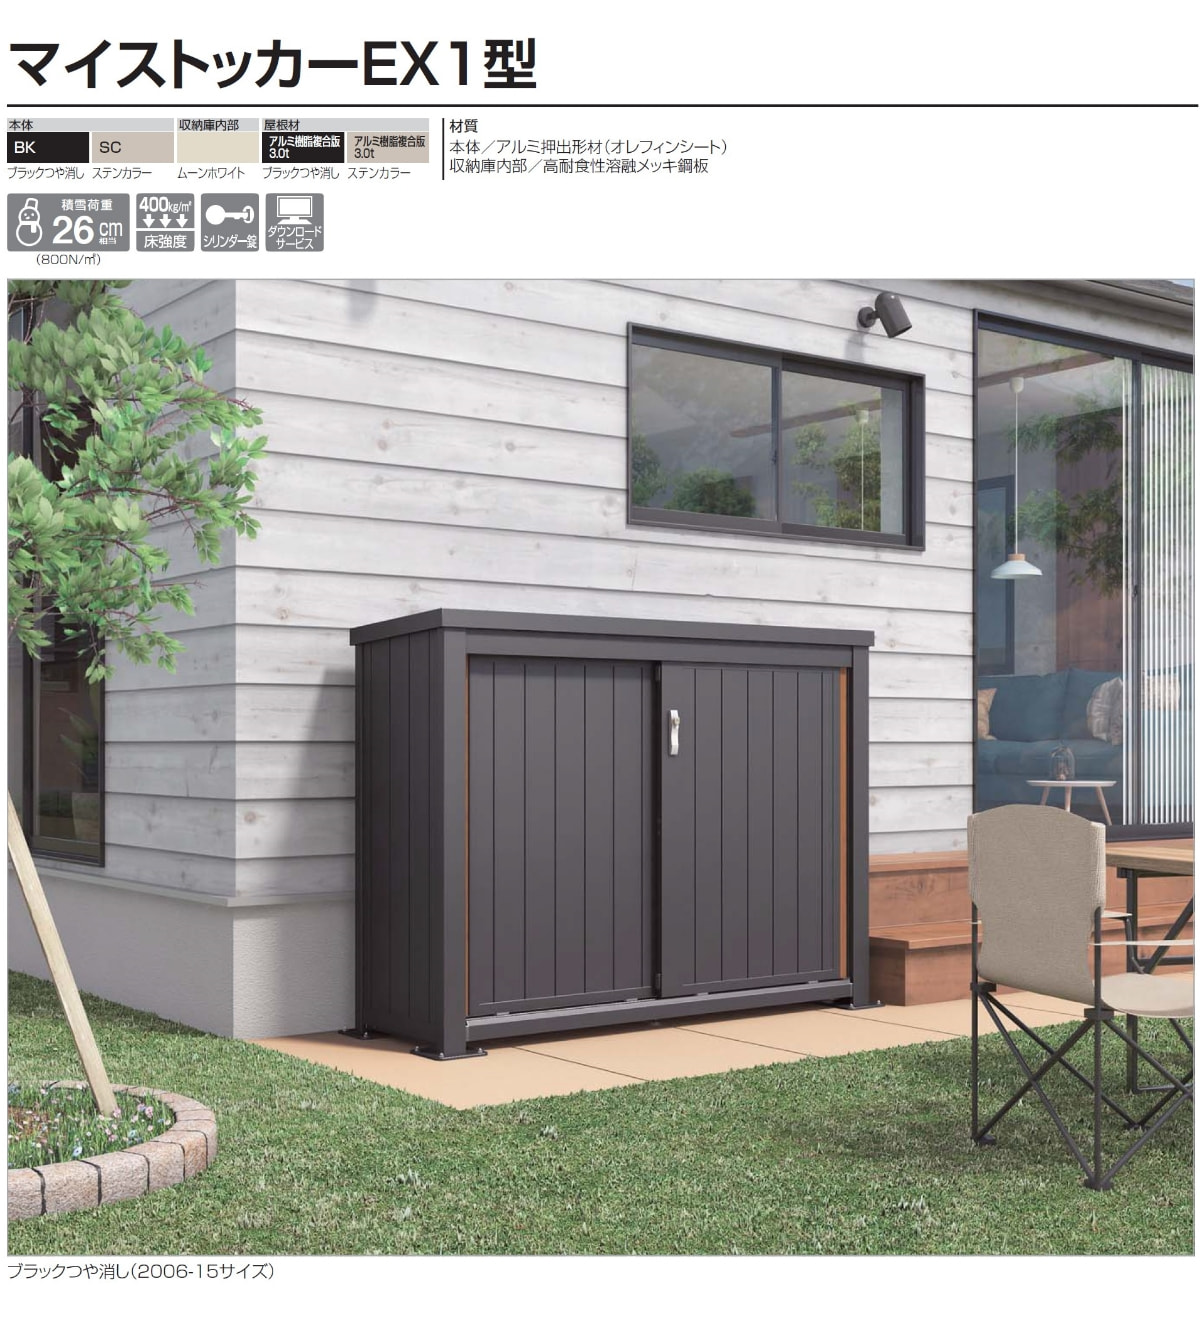 物置 収納 屋外 ドア型収納庫 四国化成 マイストッカーEX1型